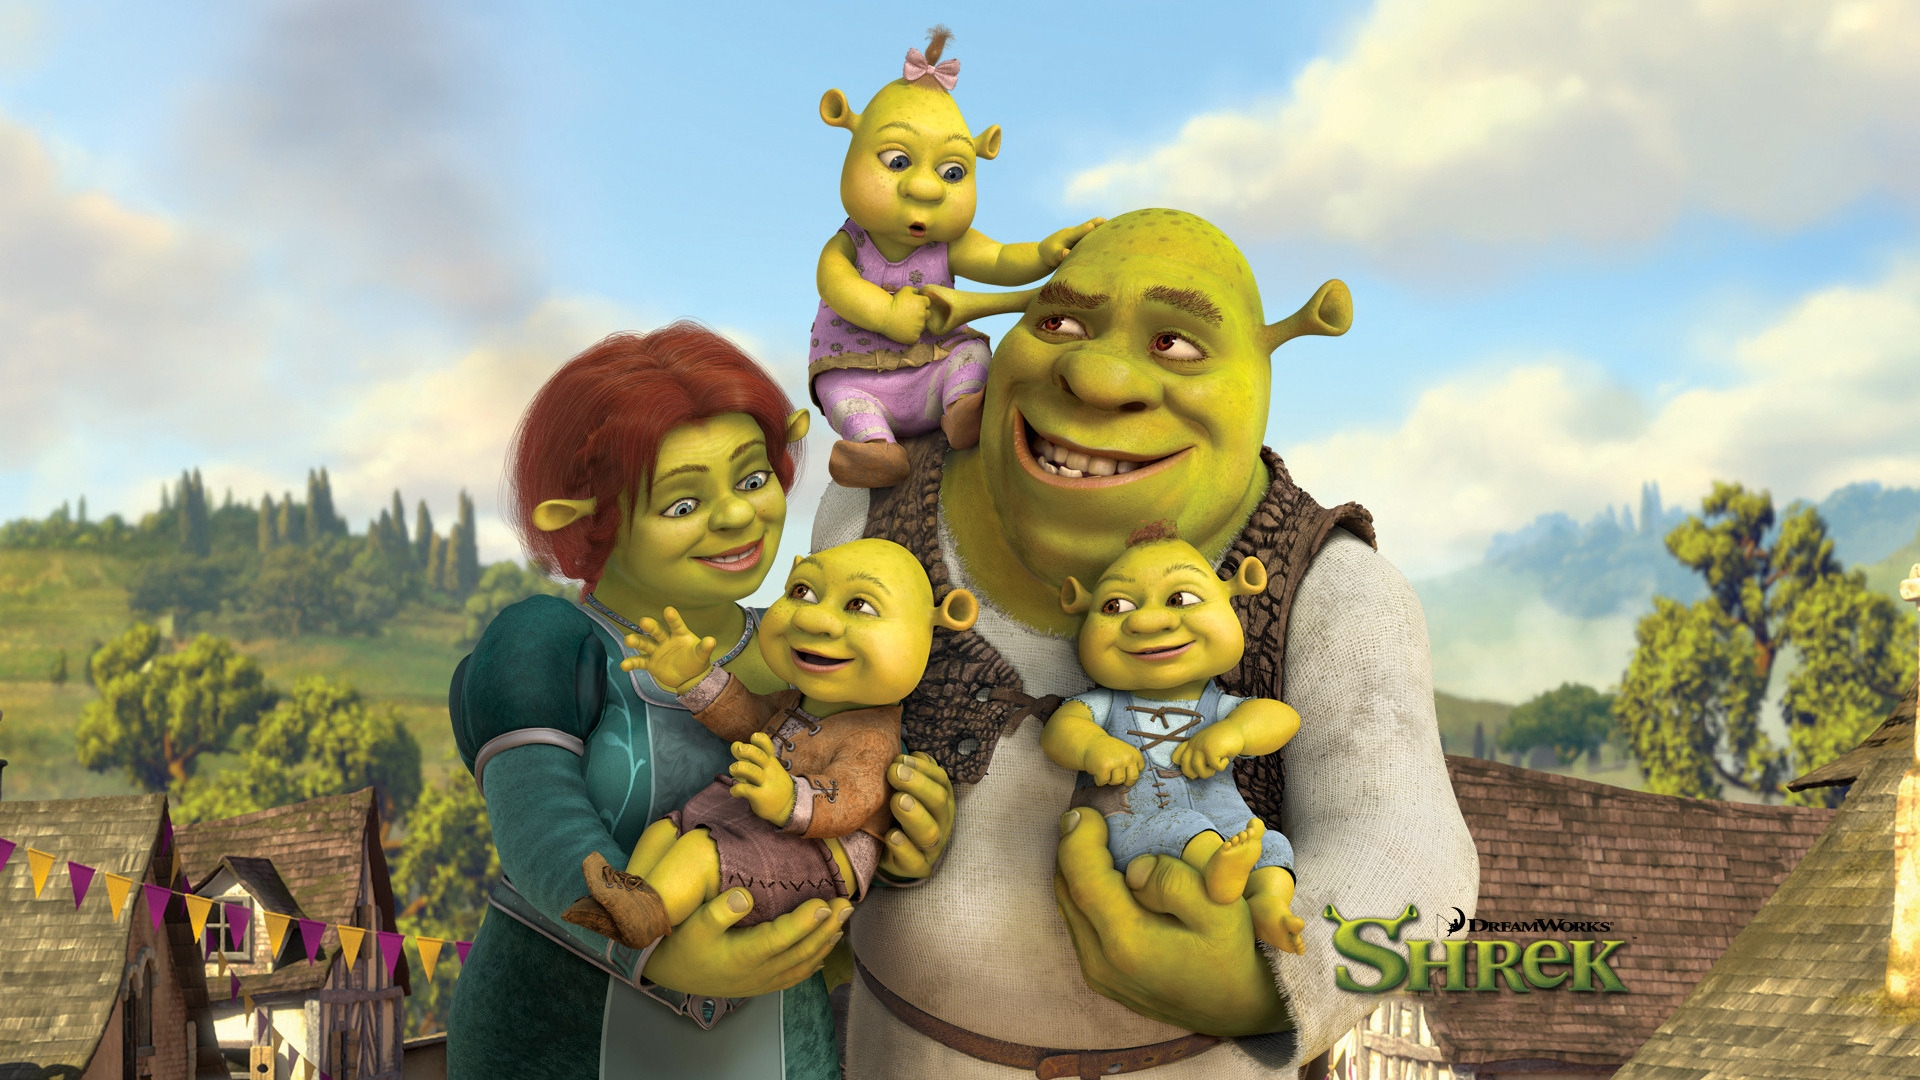 Shreks Family for 1920 x 1080 HDTV 1080p resolution